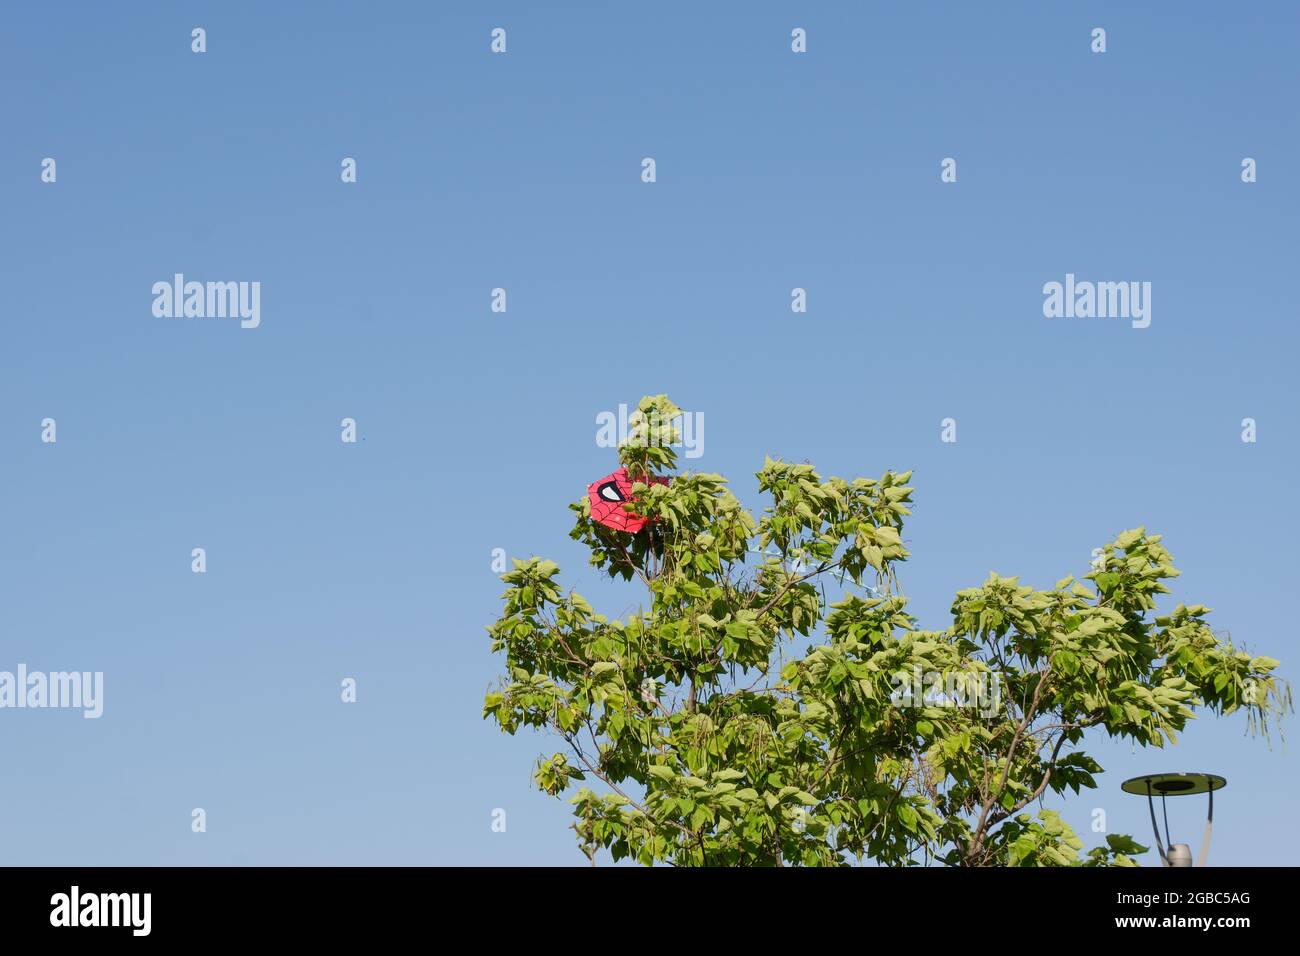 Aquilone rosso con la figura di Spiderman bloccato nell'albero in una giornata di sole Foto Stock